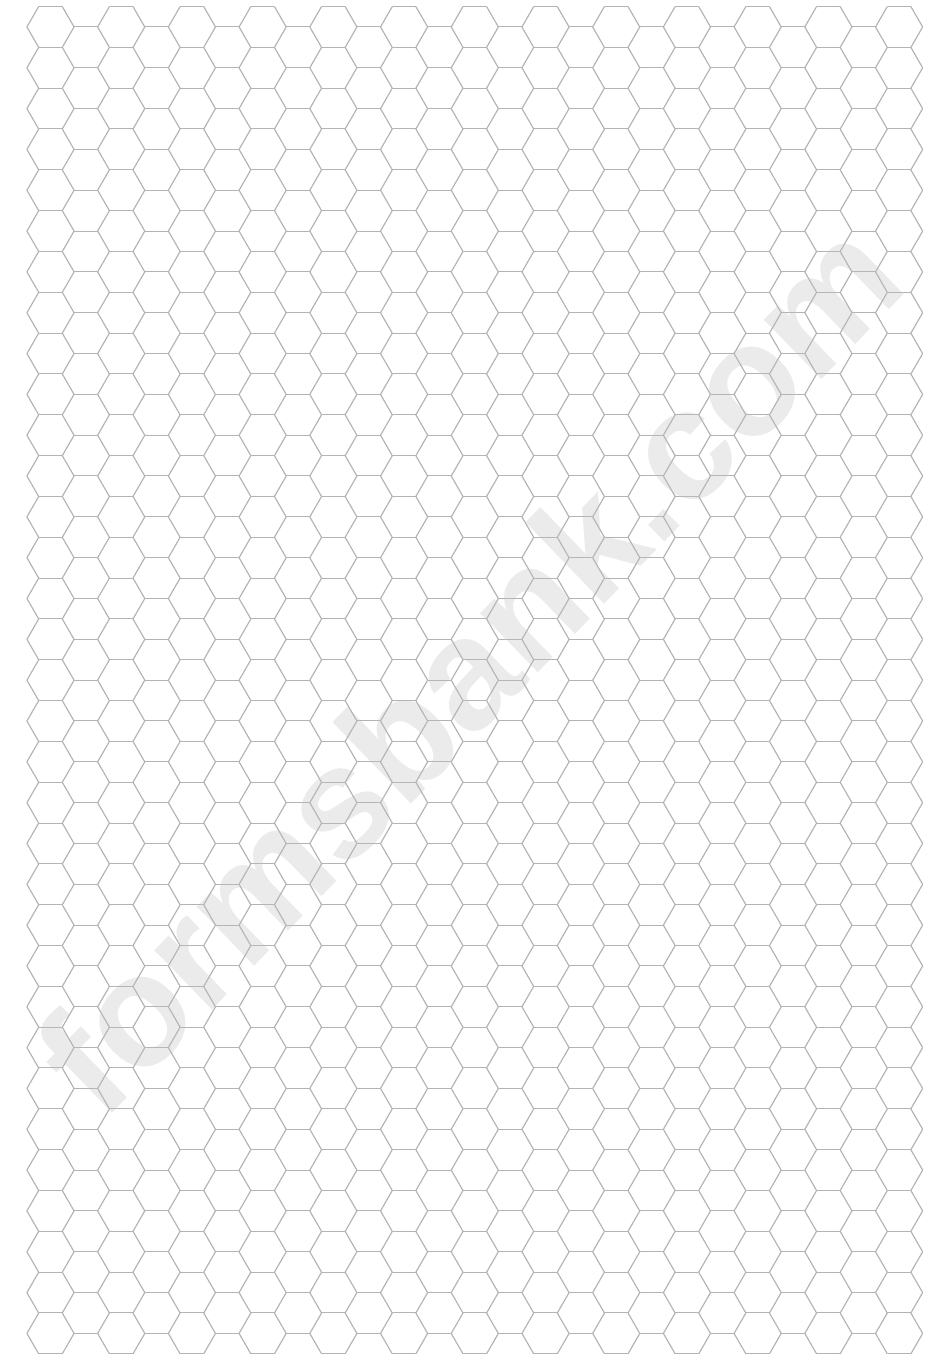 Hexagonal Grid Paper Template